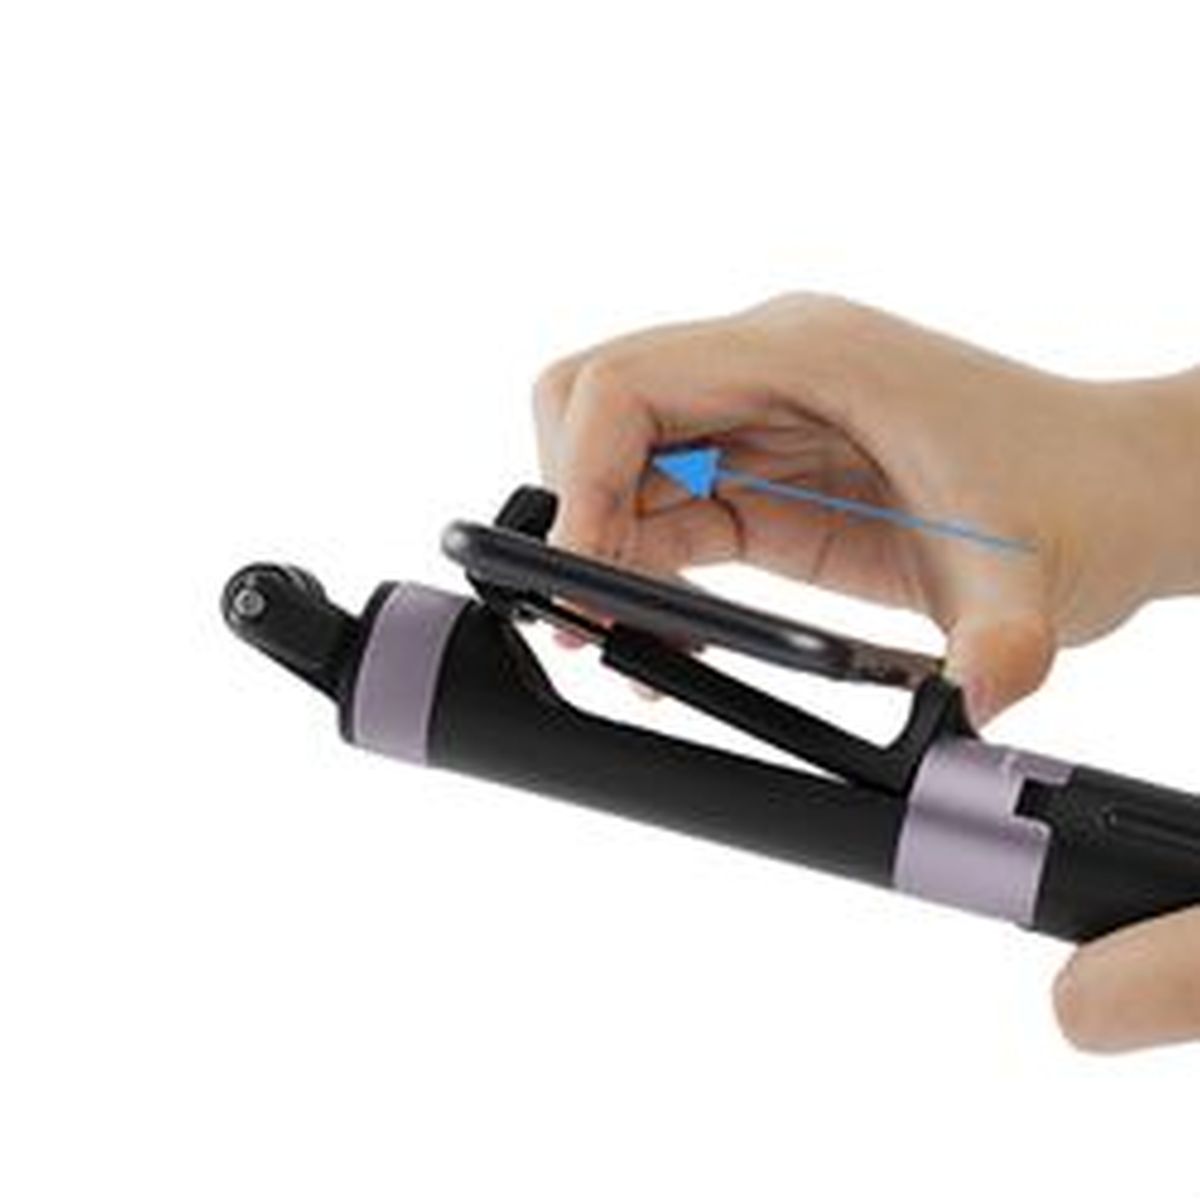 PGYTECH Hand Grip & Stativ für Action-Kamera